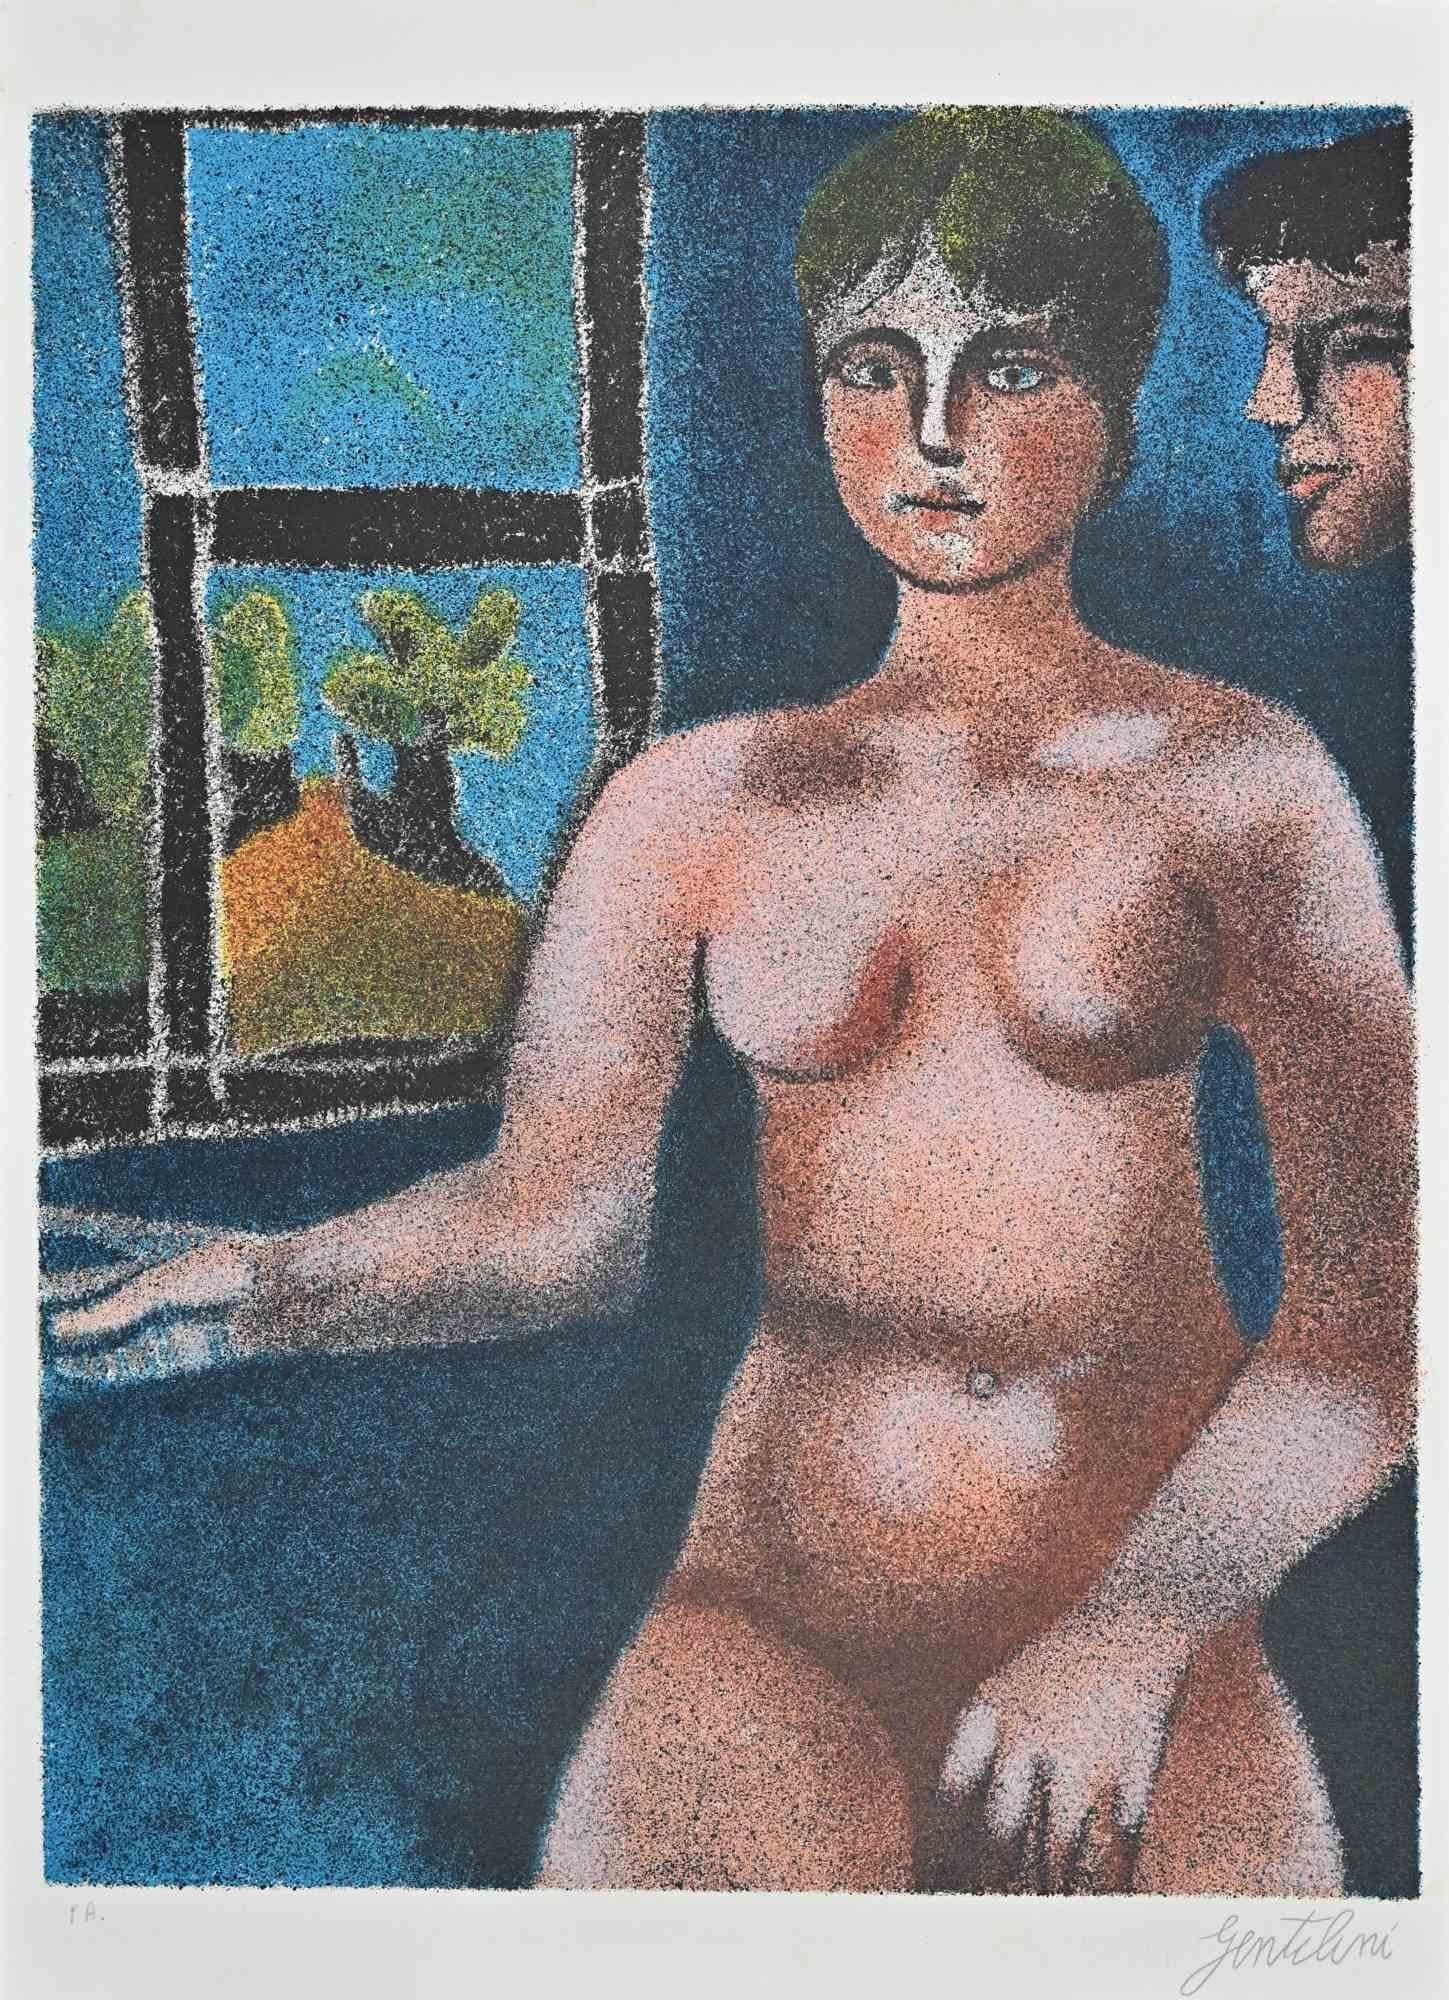 Nude of Woman ist eine Lithographie von Franco Gentilini (italienischer Maler, 1909-1981) aus den 1970er Jahren.

Der Erhaltungszustand der Kunstwerke ist ausgezeichnet.

Handsigniert.

Der Beweis des Künstlers.

Franco Gentilini (italienischer